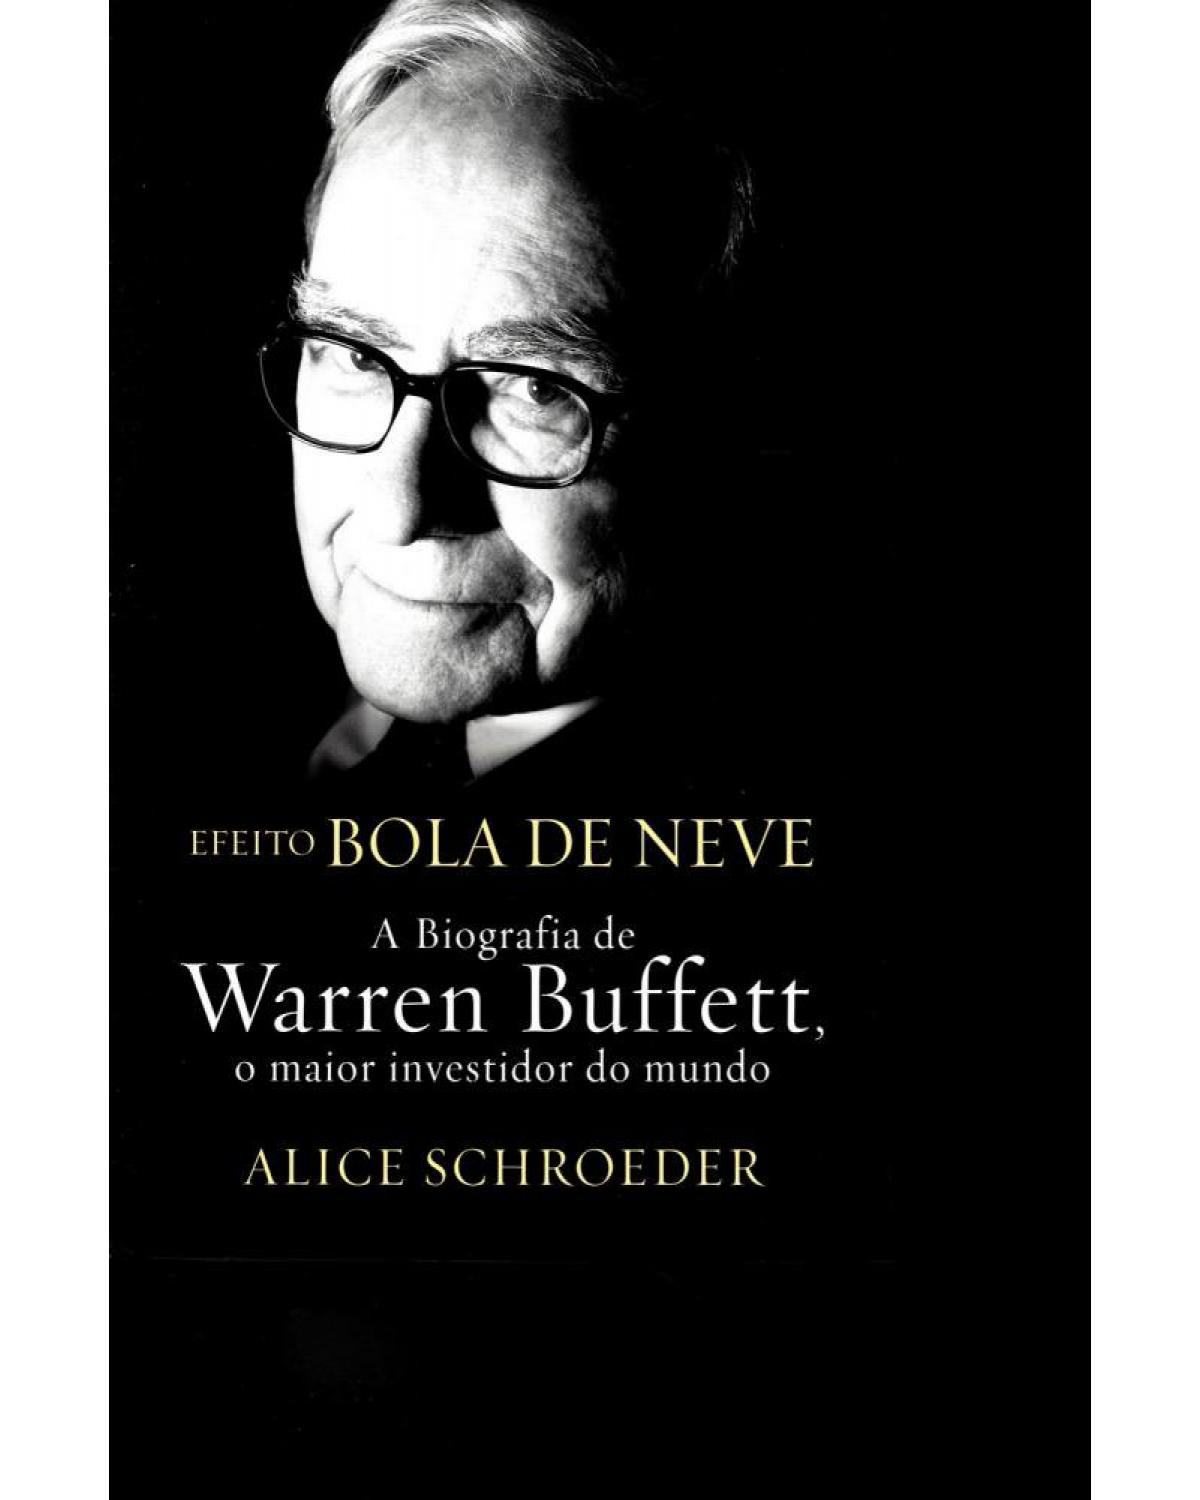 Efeito bola de neve - a biografia de Warren Buffett, o maior investidor do mundo - 1ª Edição | 2009